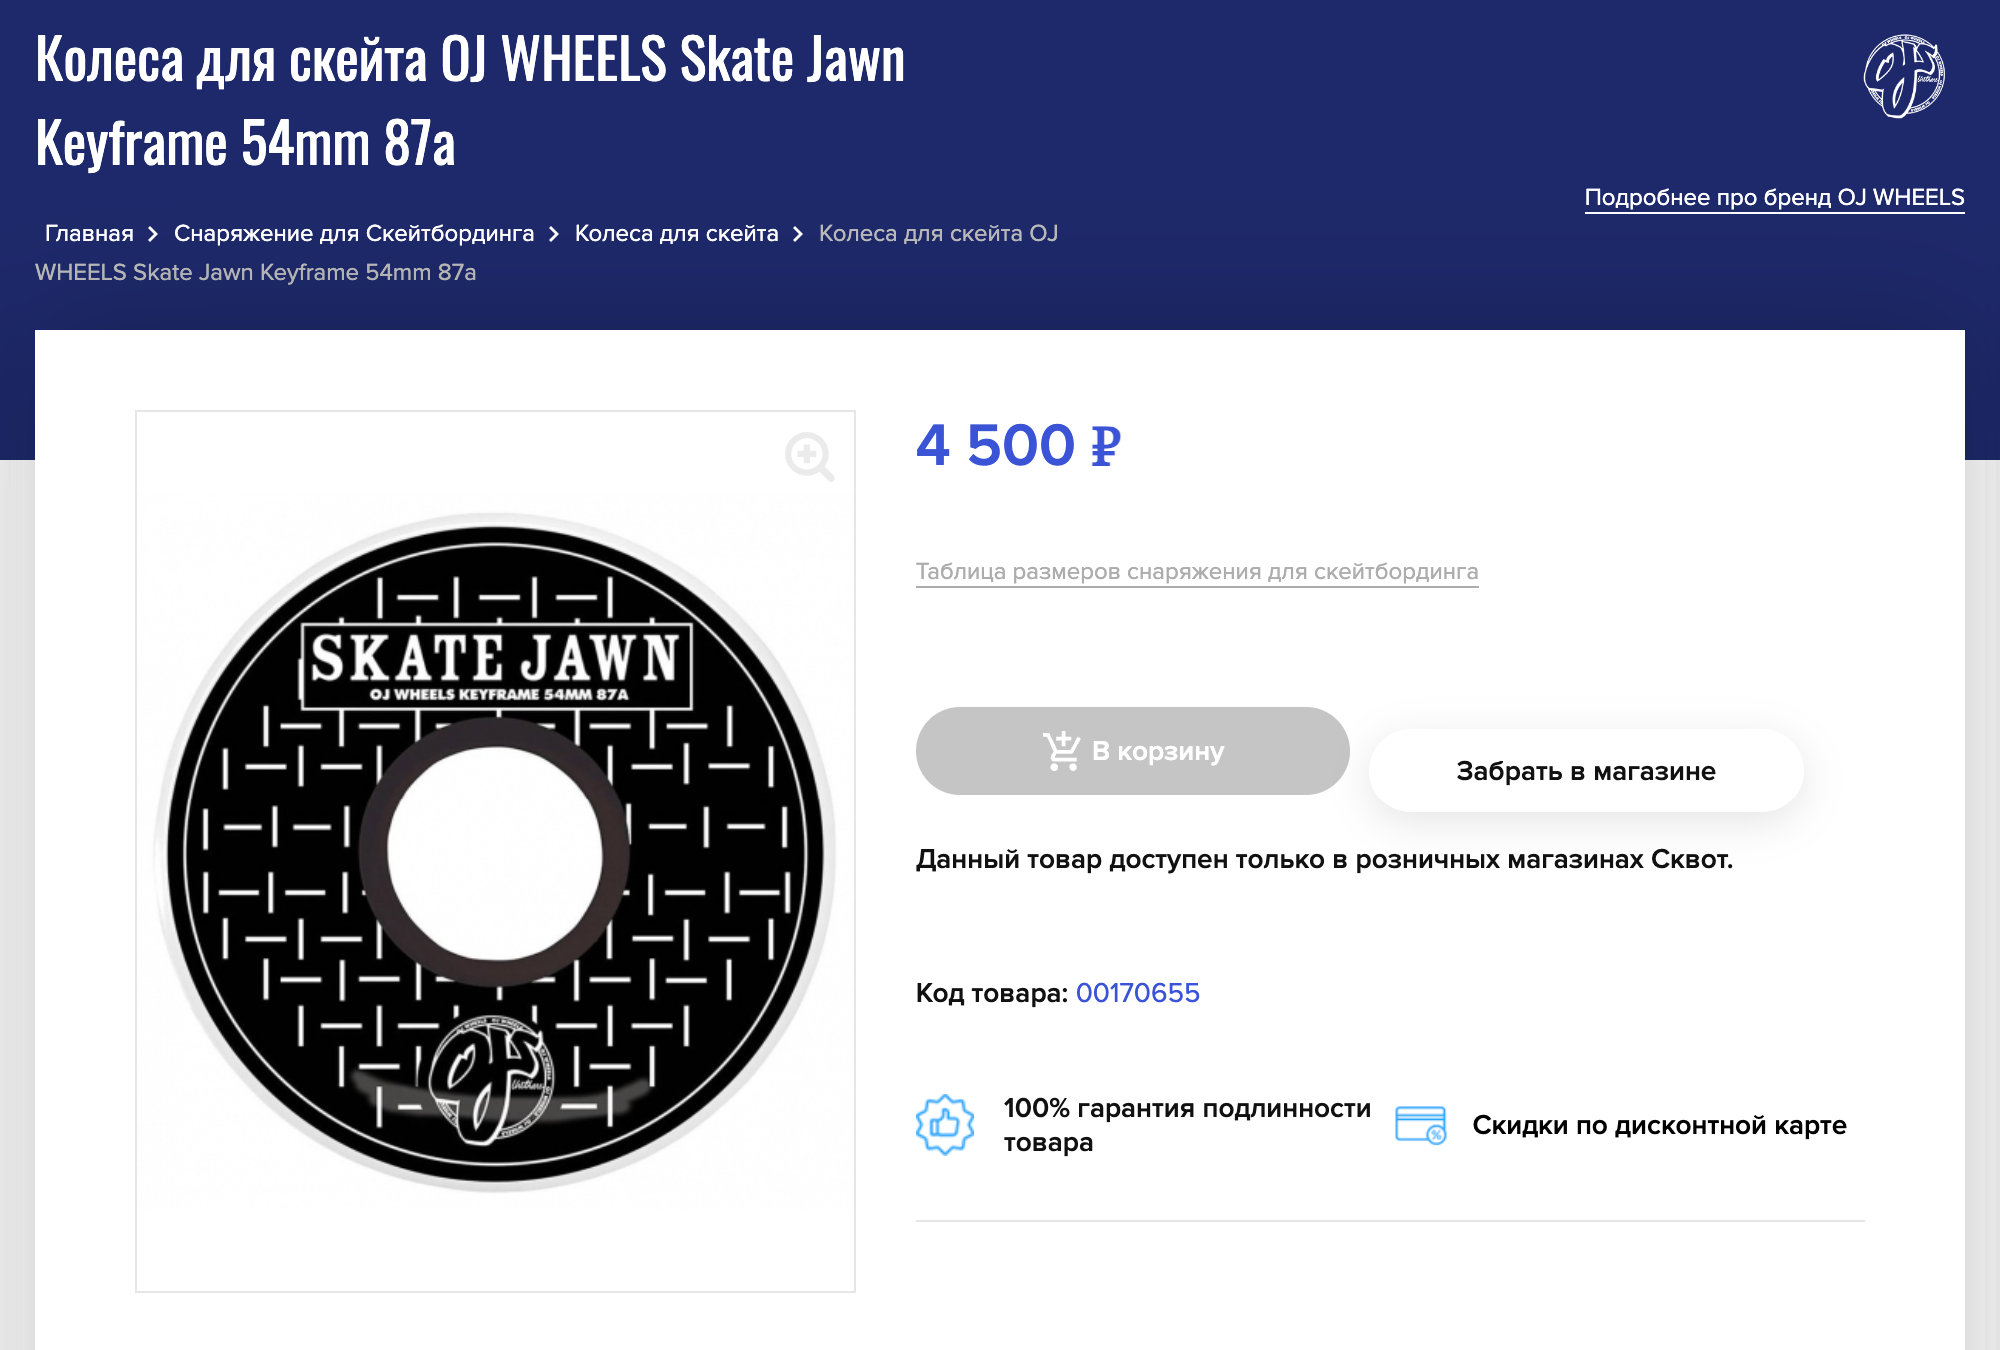 Мои колеса OJ Wheels Skate Jawn Keyframe 54mm 87A. Отлично подходят для того, чтобы кататься по улицам и в рампе. Но я предполагаю, что в моем случае они тяжеловаты для трюков, например флипов. Источник: skvot.com